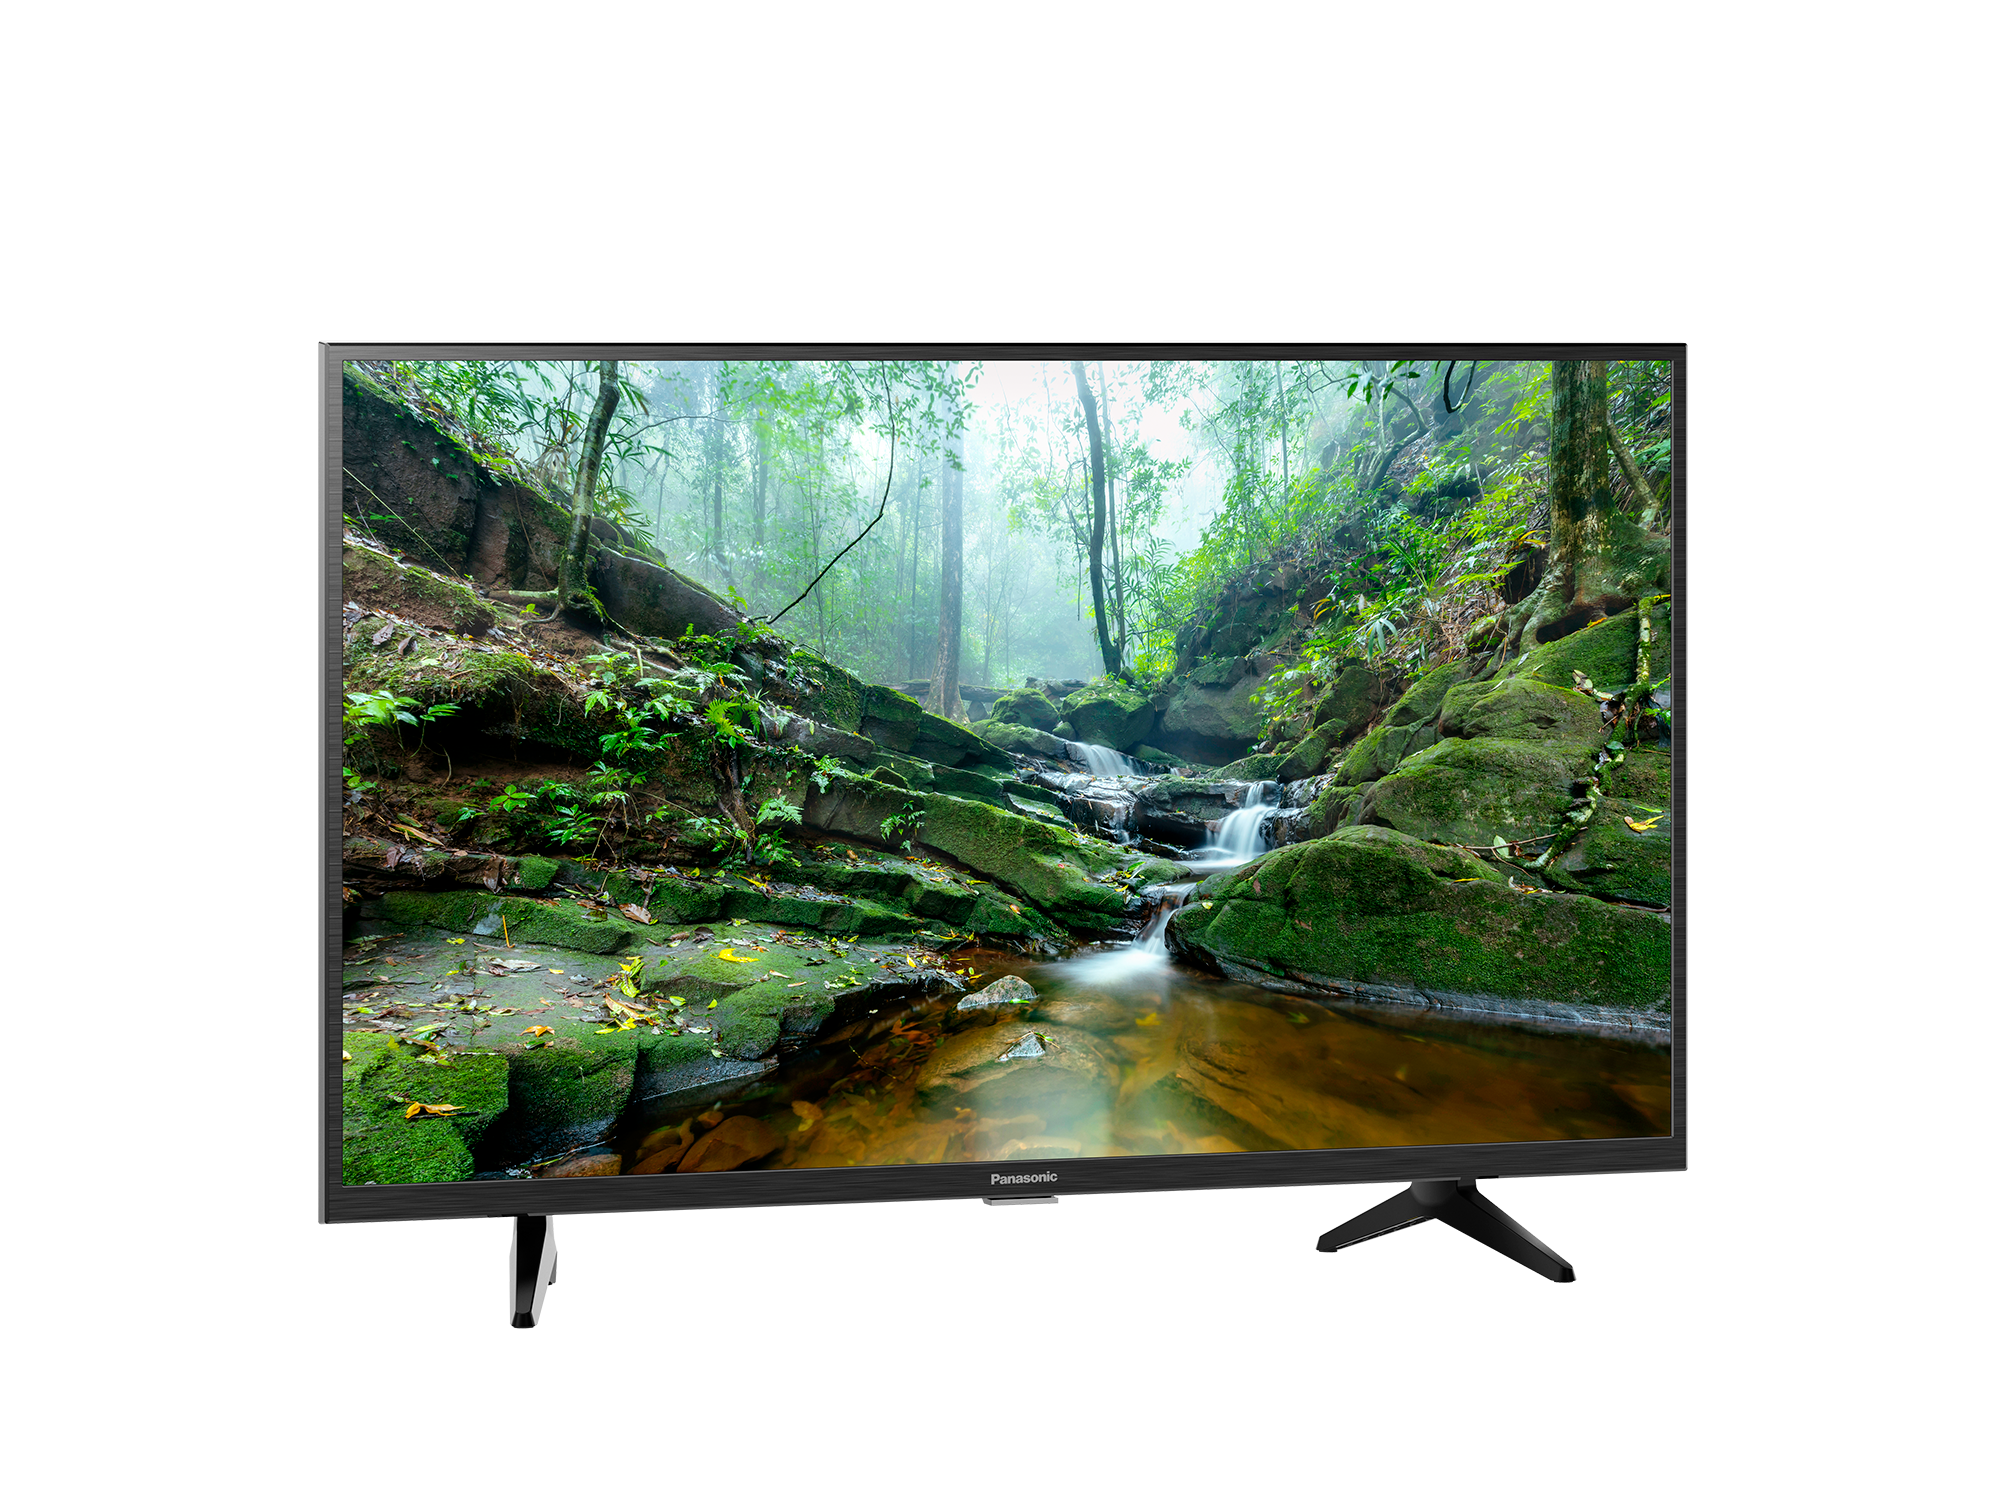 Smart TV Panasonic HD 32 inches TH-32LS600V - Điều khiển giọng nói - Bảo Hành Chính Hãng 24 Tháng